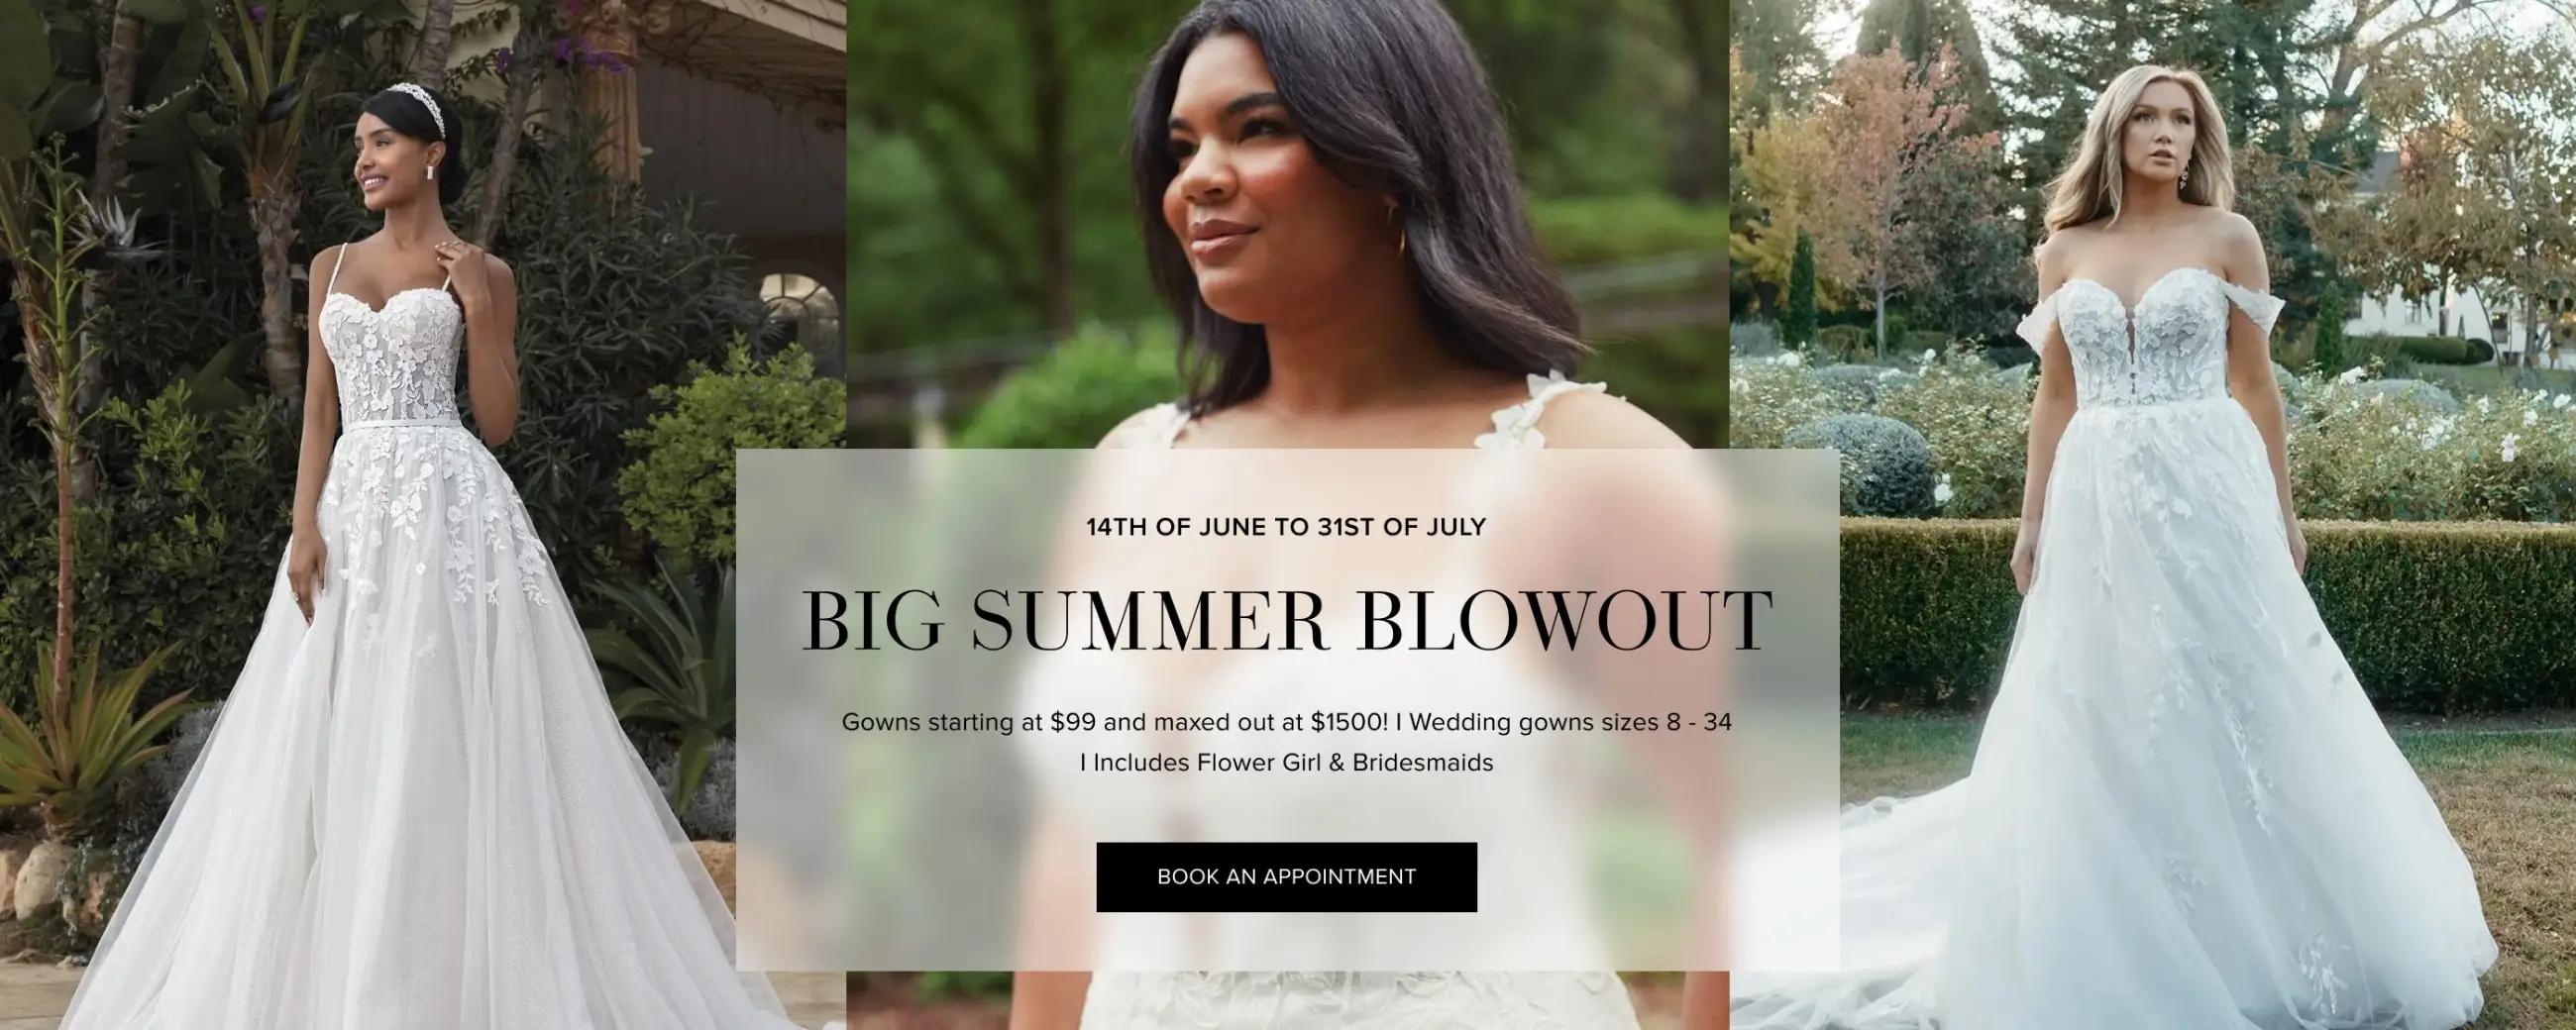 Big summer blowout promotion desktop banner